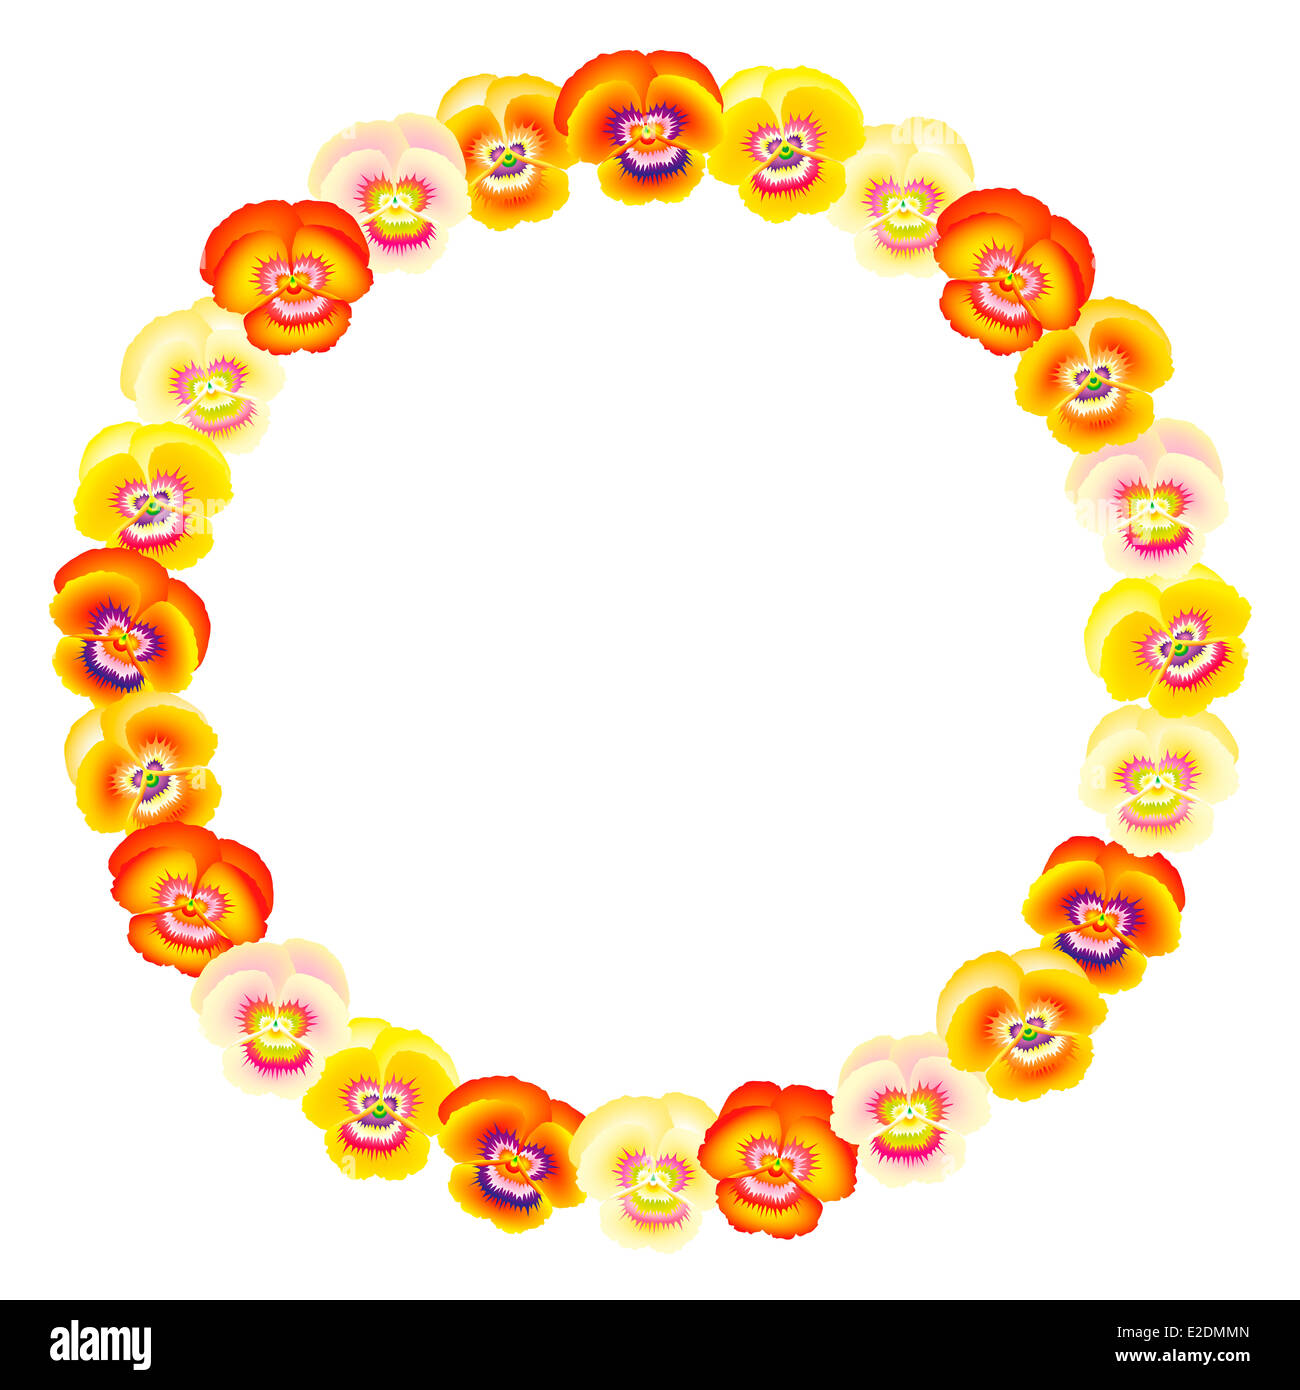 Circular orange yellow pansy frame. Stock Photo